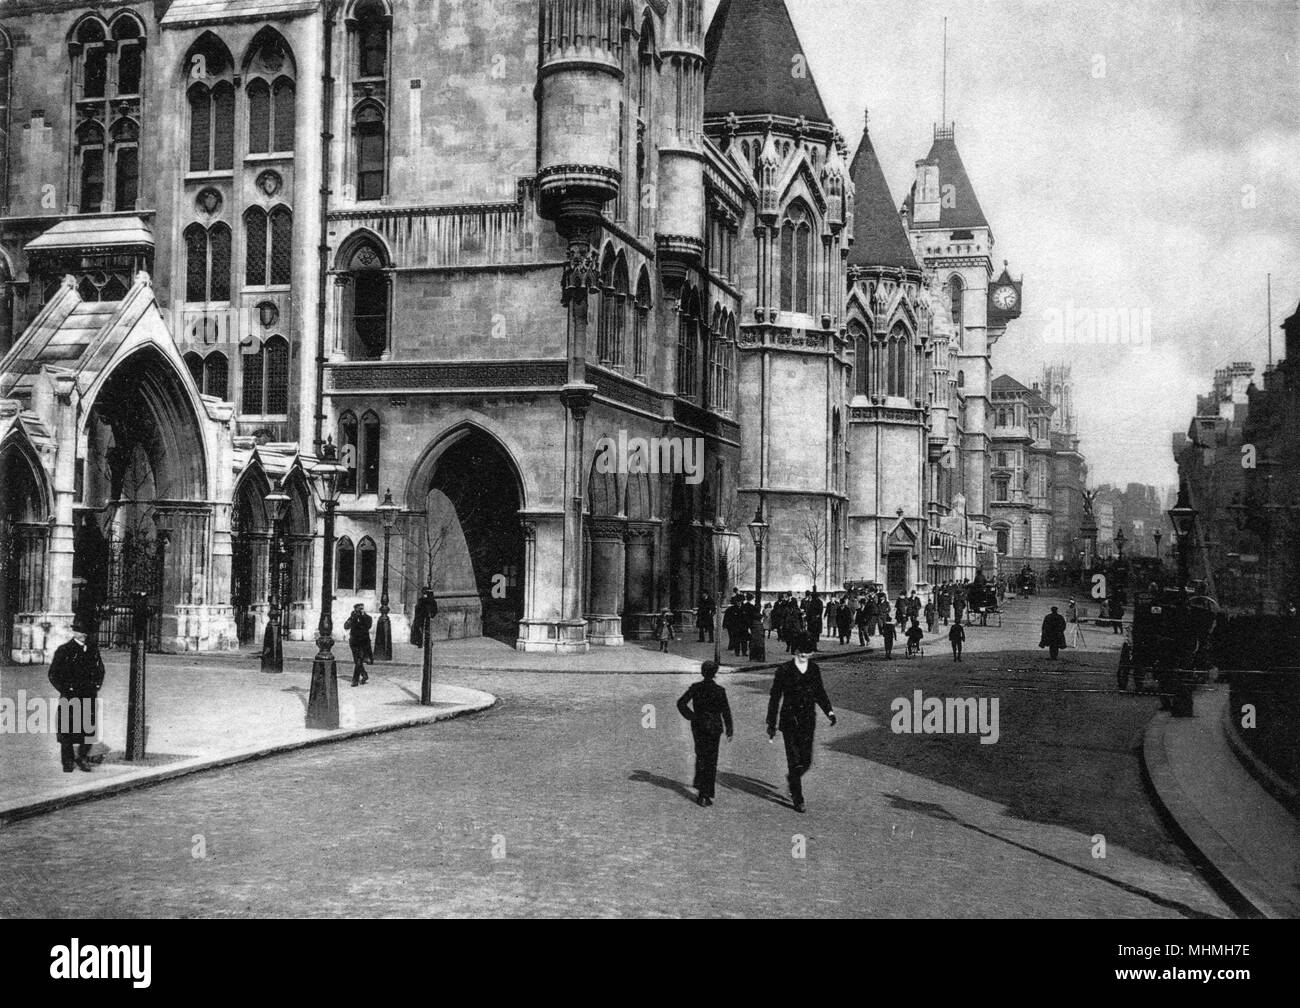 Los tribunales de justicia, The Strand, Londres. Fecha: 1890 Foto de stock